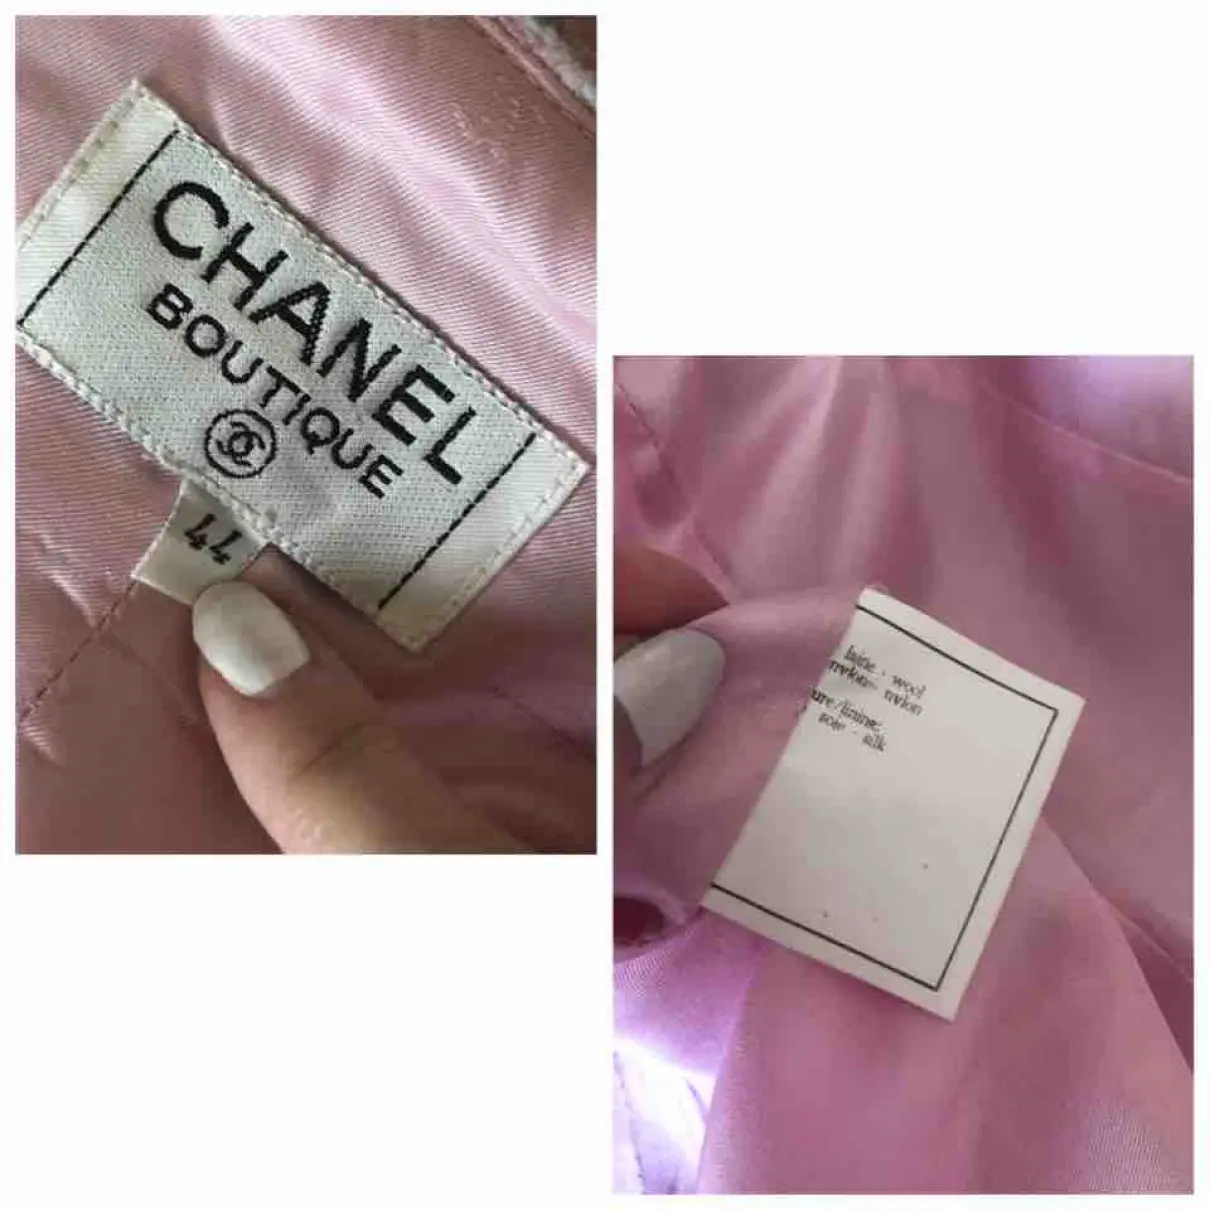 Tweed jacket Chanel - Vintage